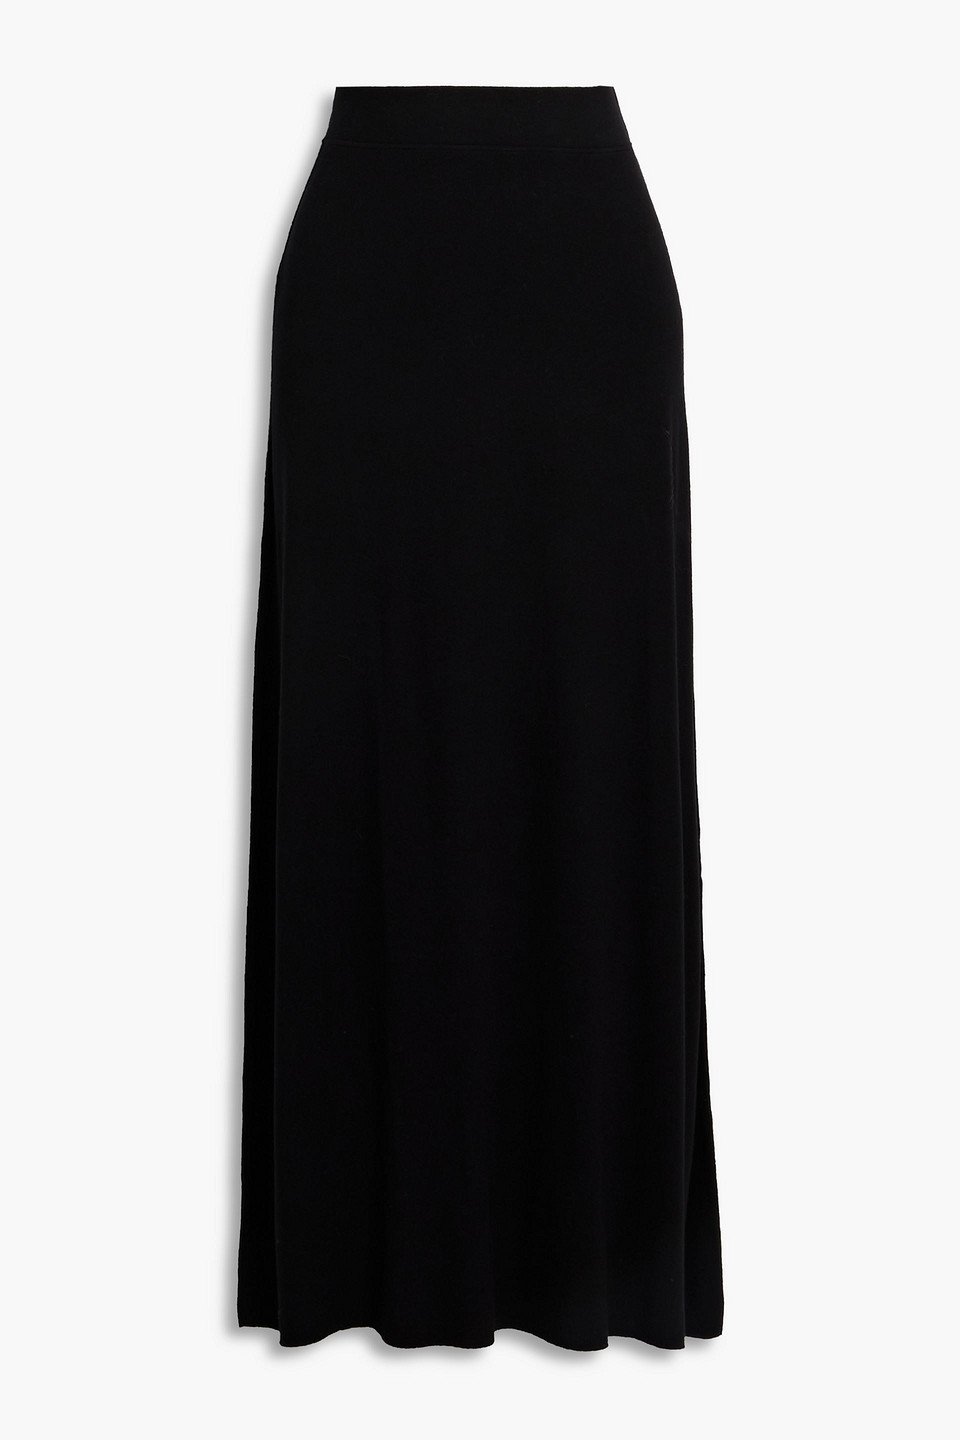 Jersey Midi | Skirt in AMERICAN Black Endource VINTAGE